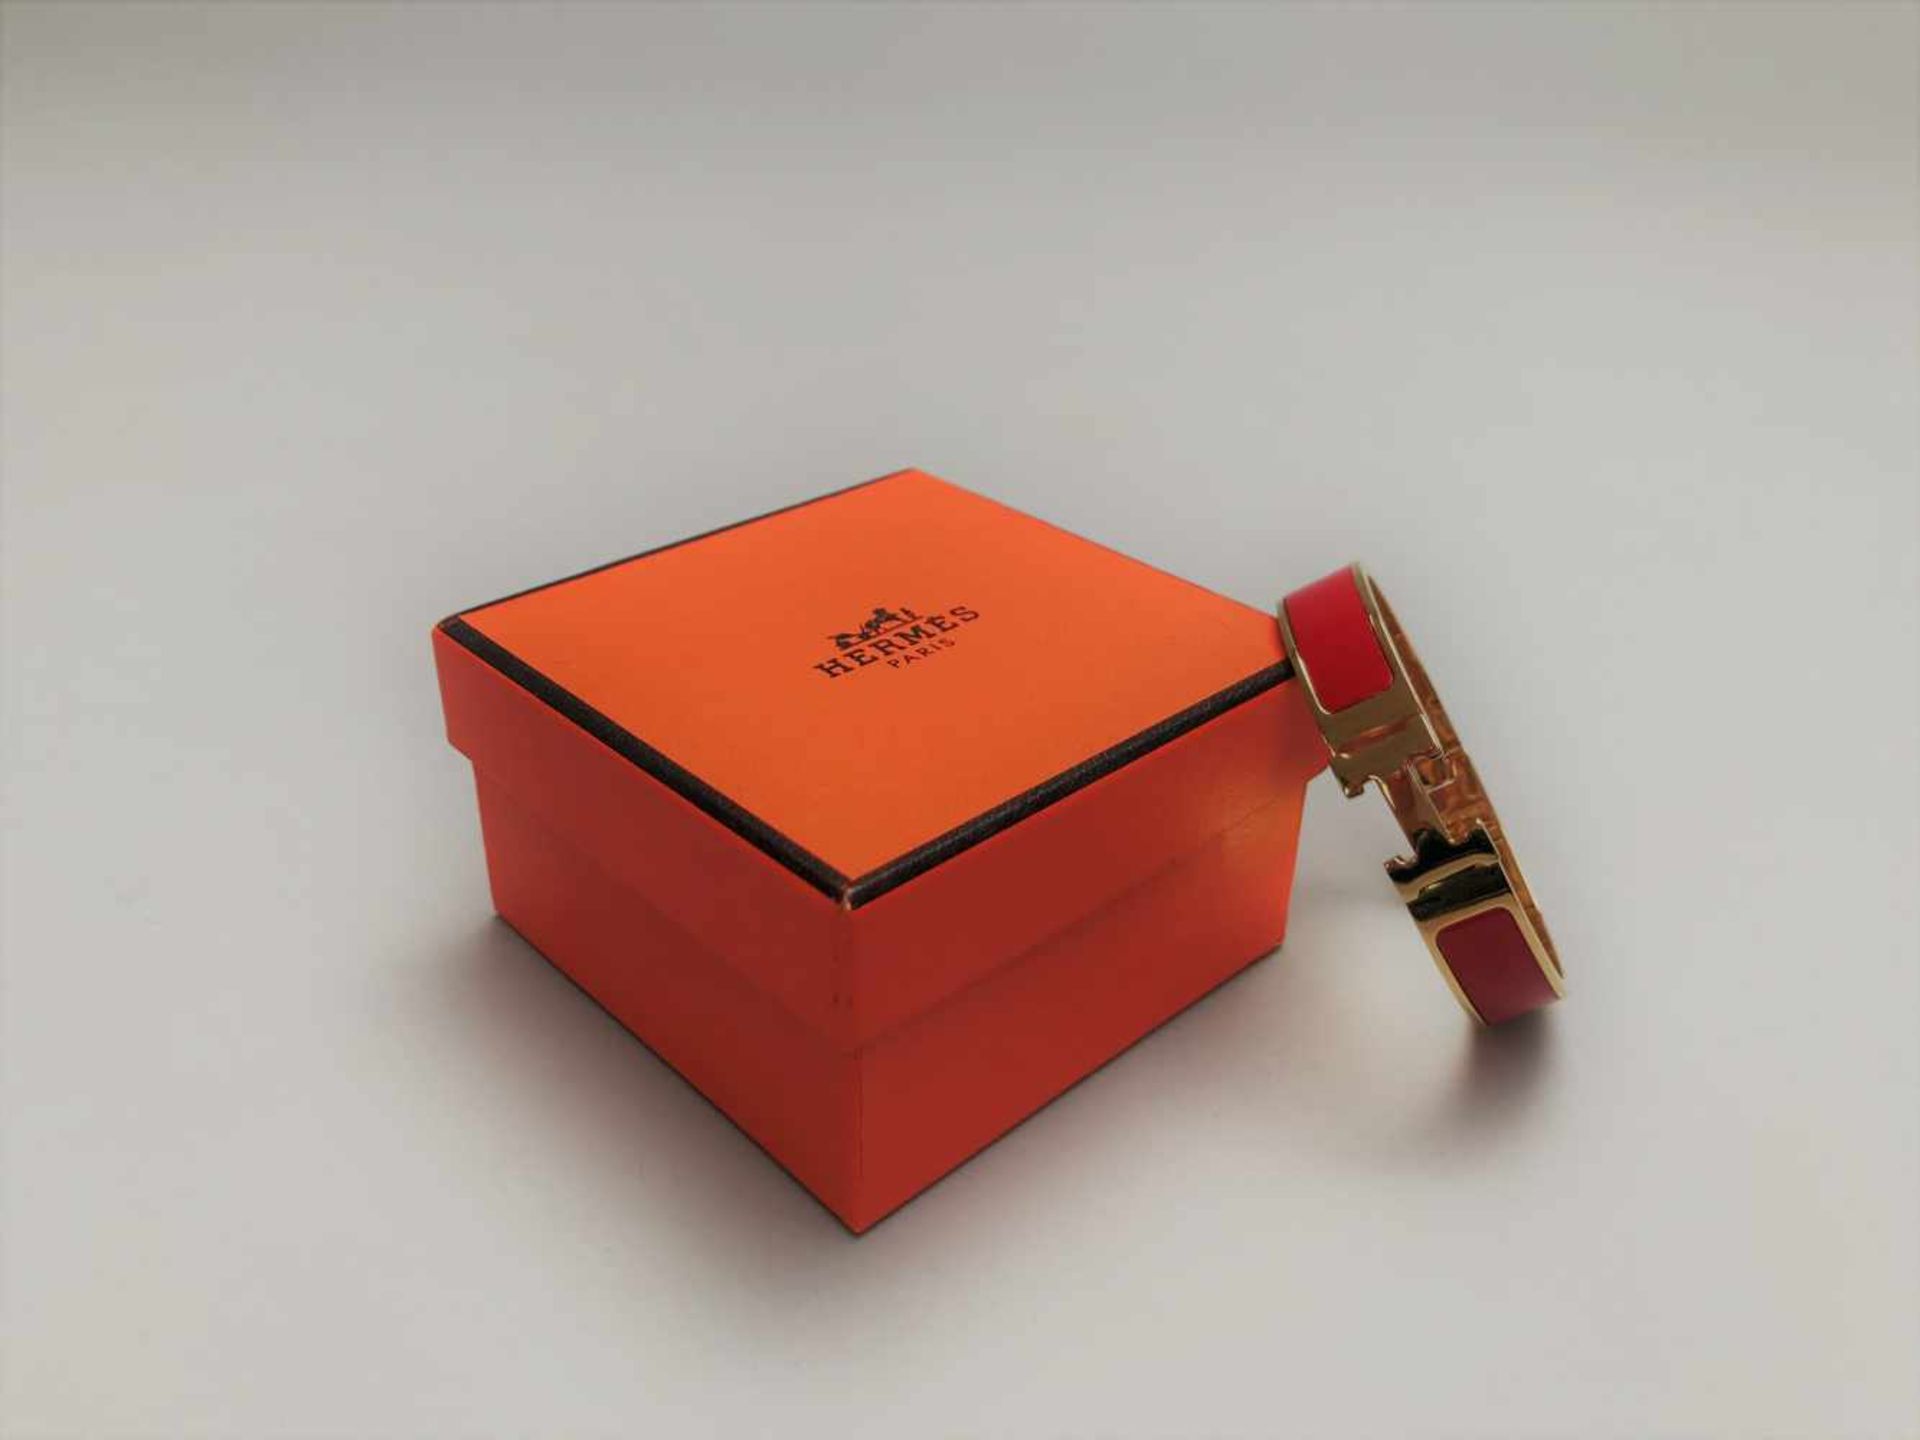 HERMES PARISBRACELET Clic H en métal doré et laque rouge, PM, poignée .Approx. 15,5 cm. - Bild 3 aus 3